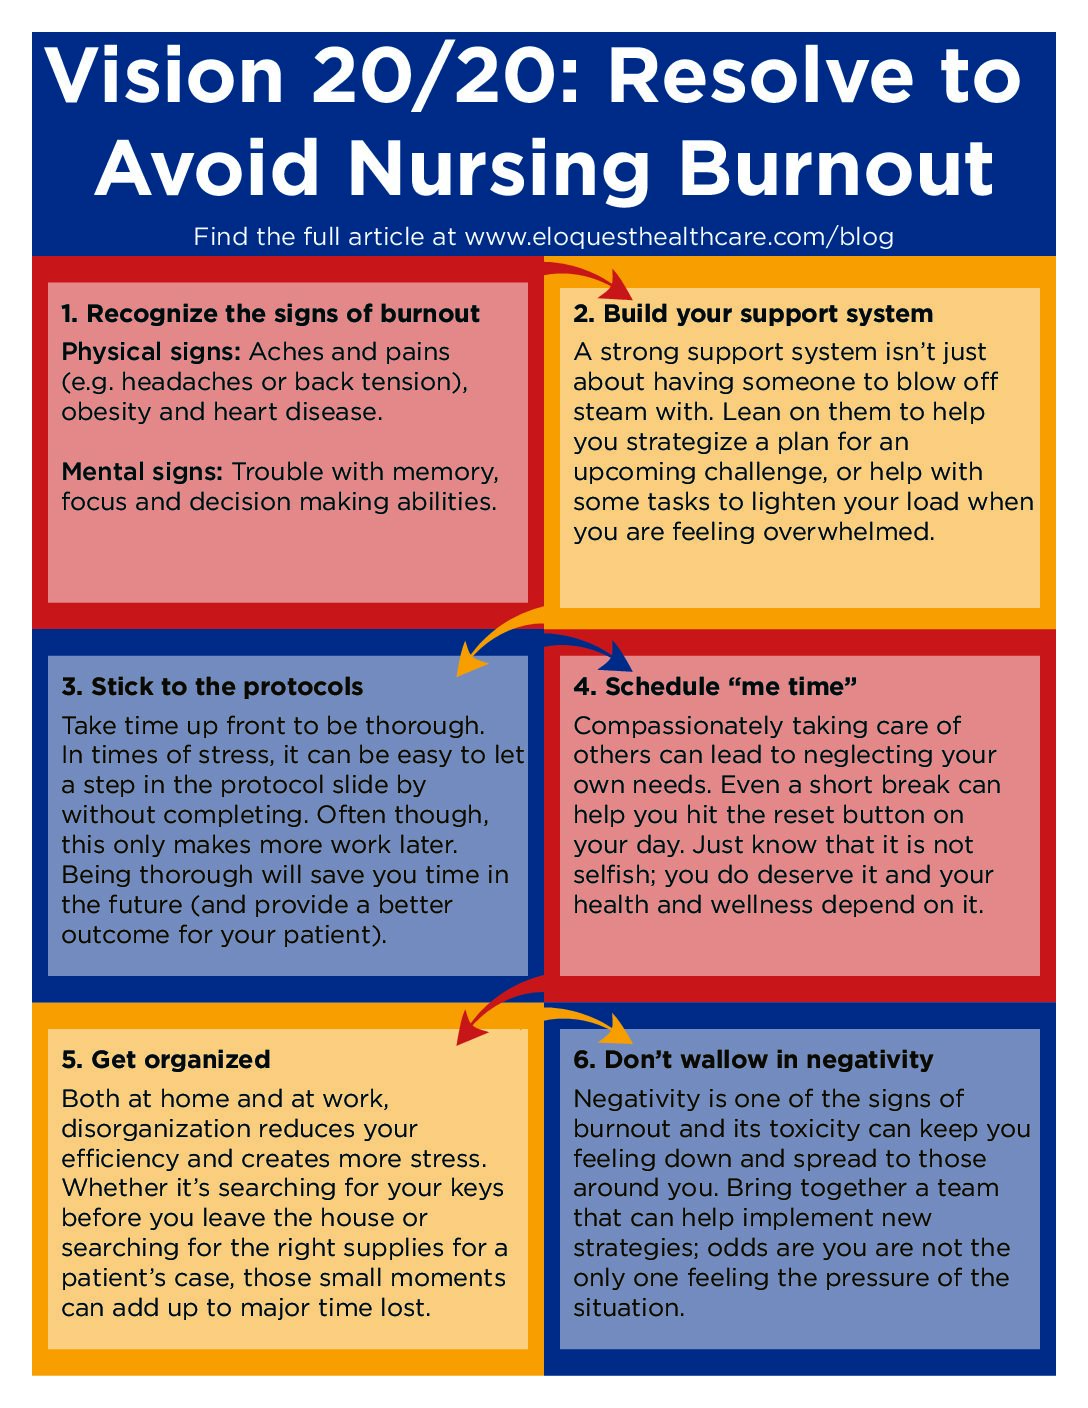 nursing burnout thesis statement